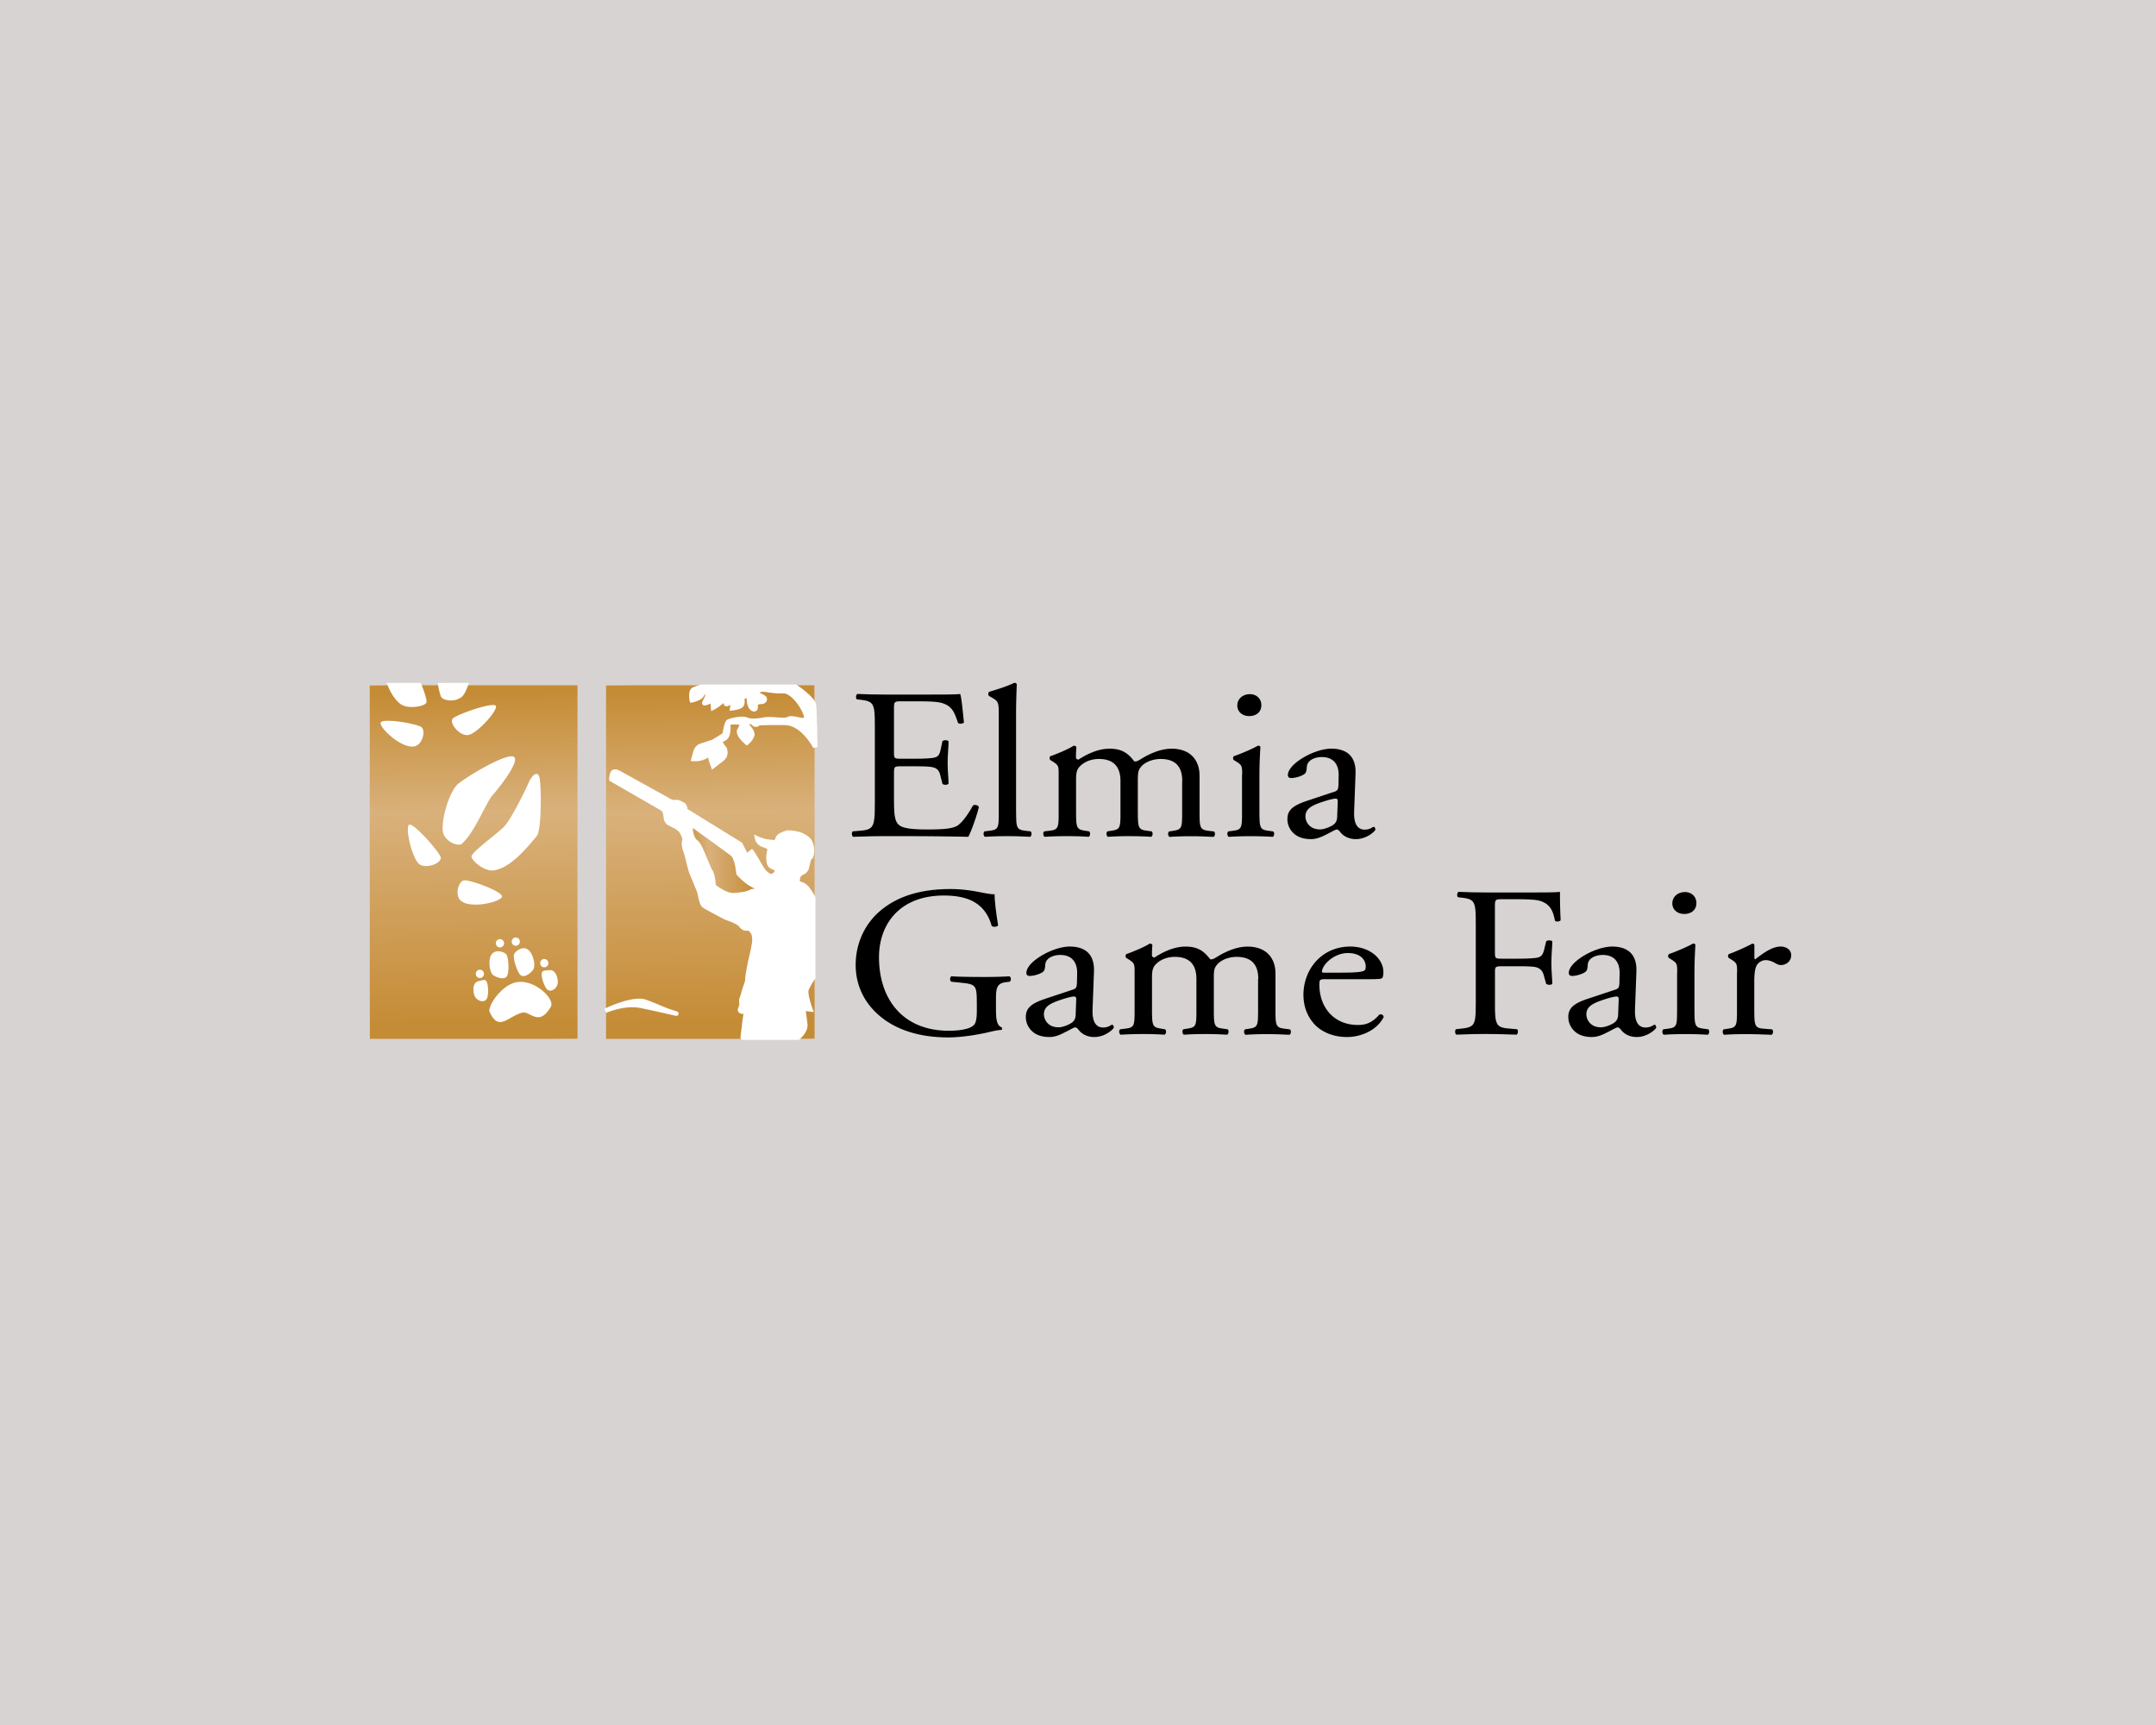 Elmia Game Fair